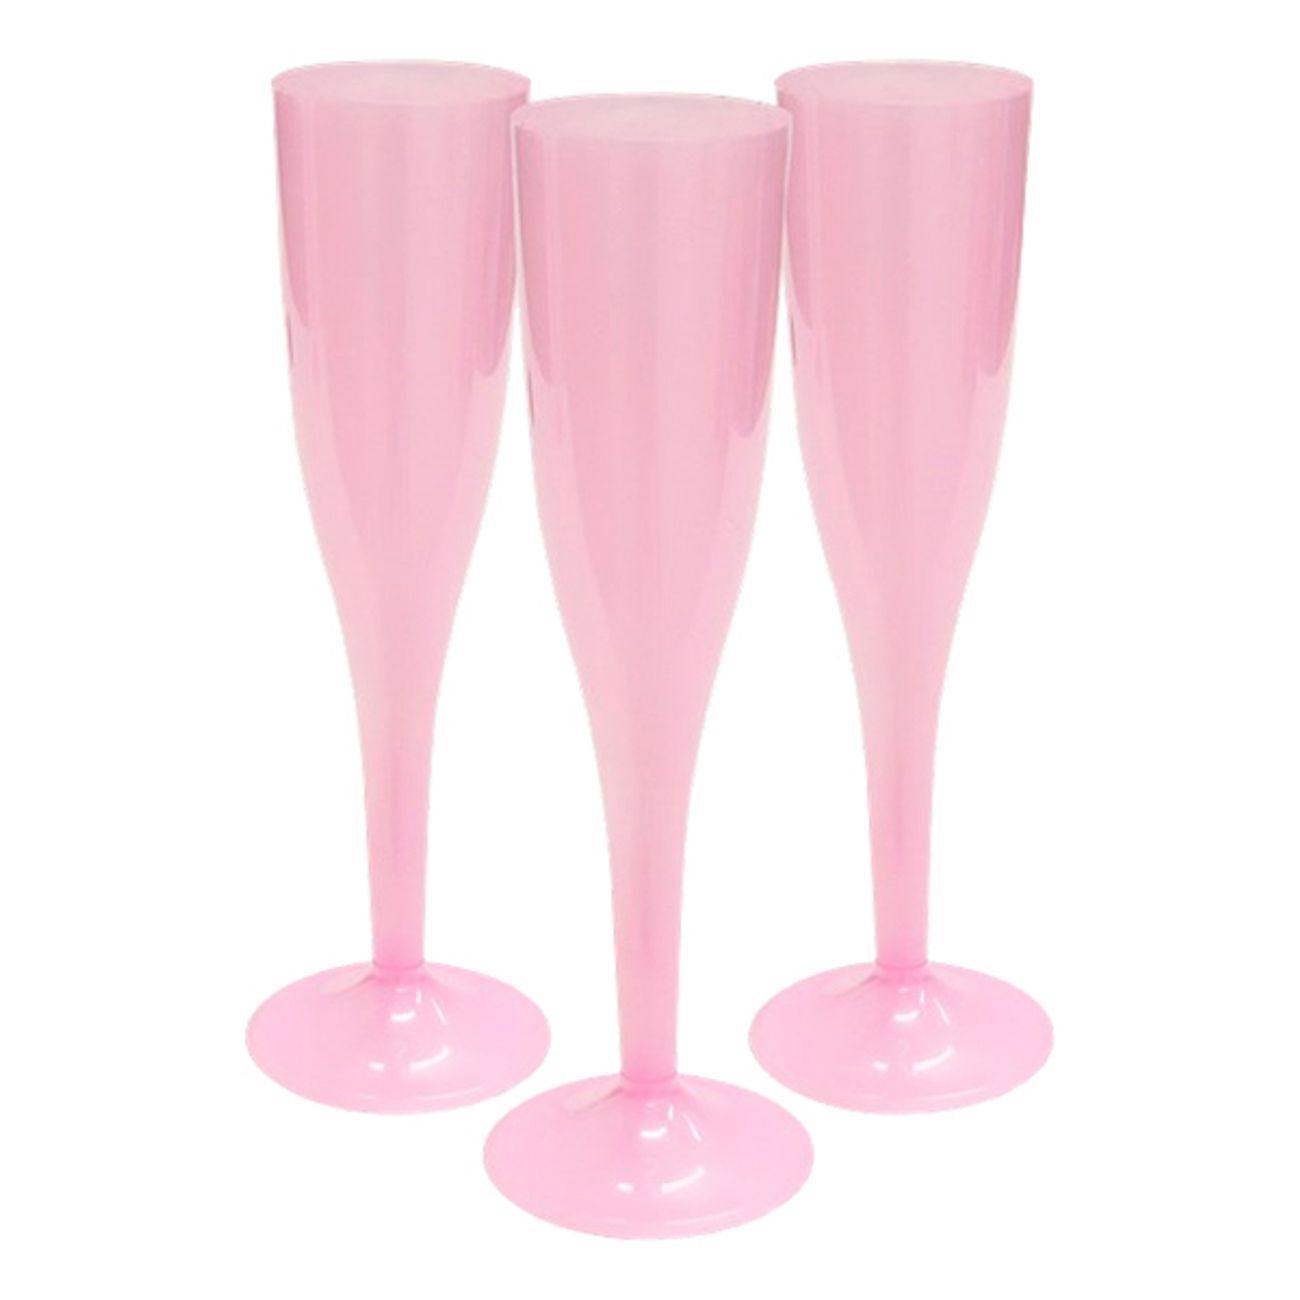 champagneglas-av-plast-ljusrosa-1